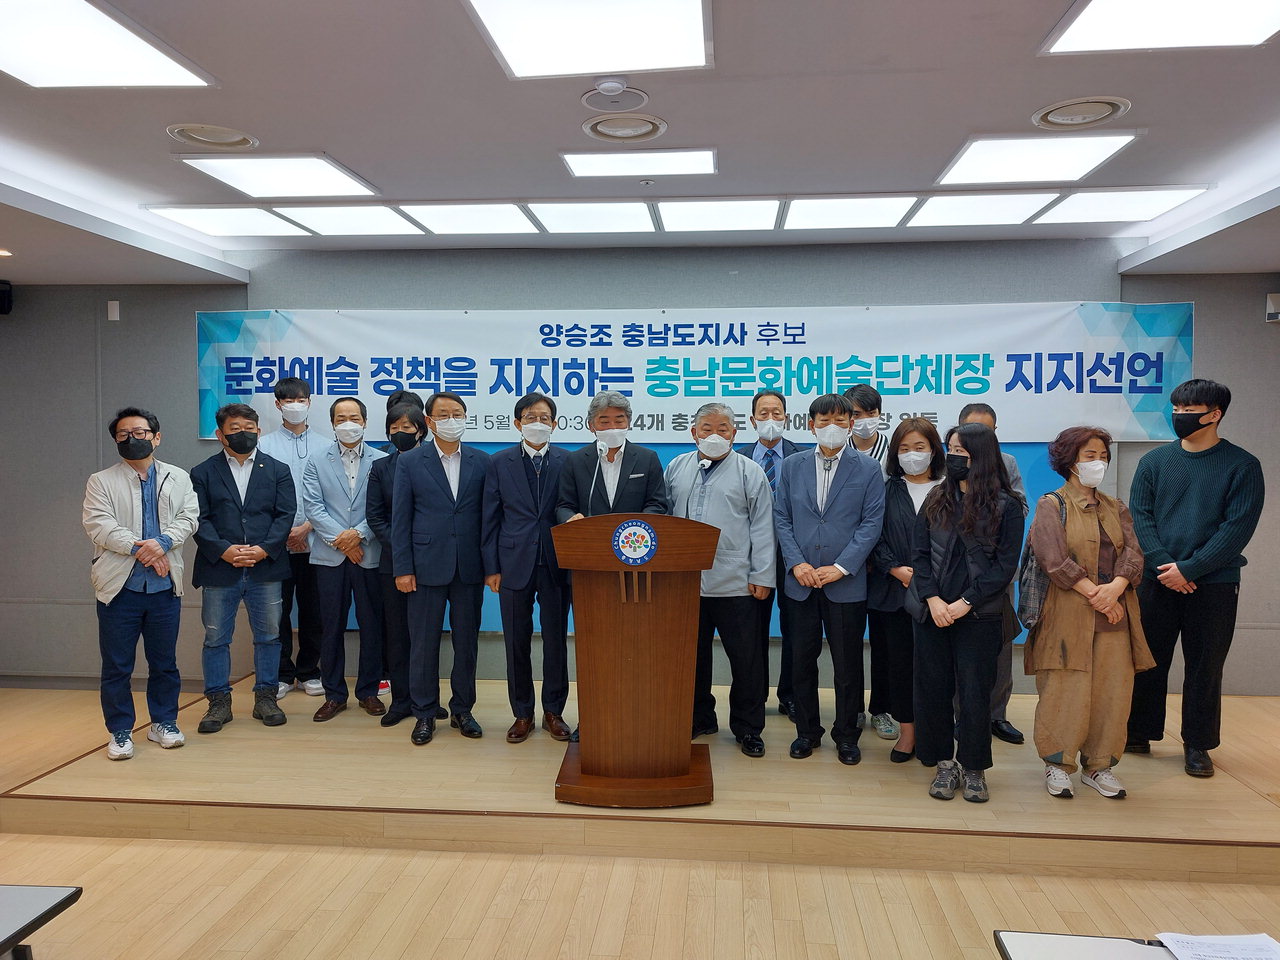 충남지역 문화예술단체장 24명은 9일 도청 프레스센터에서 기자회견을 열고 더불어민주당 양승조 예비후보 지지를 선언했다.